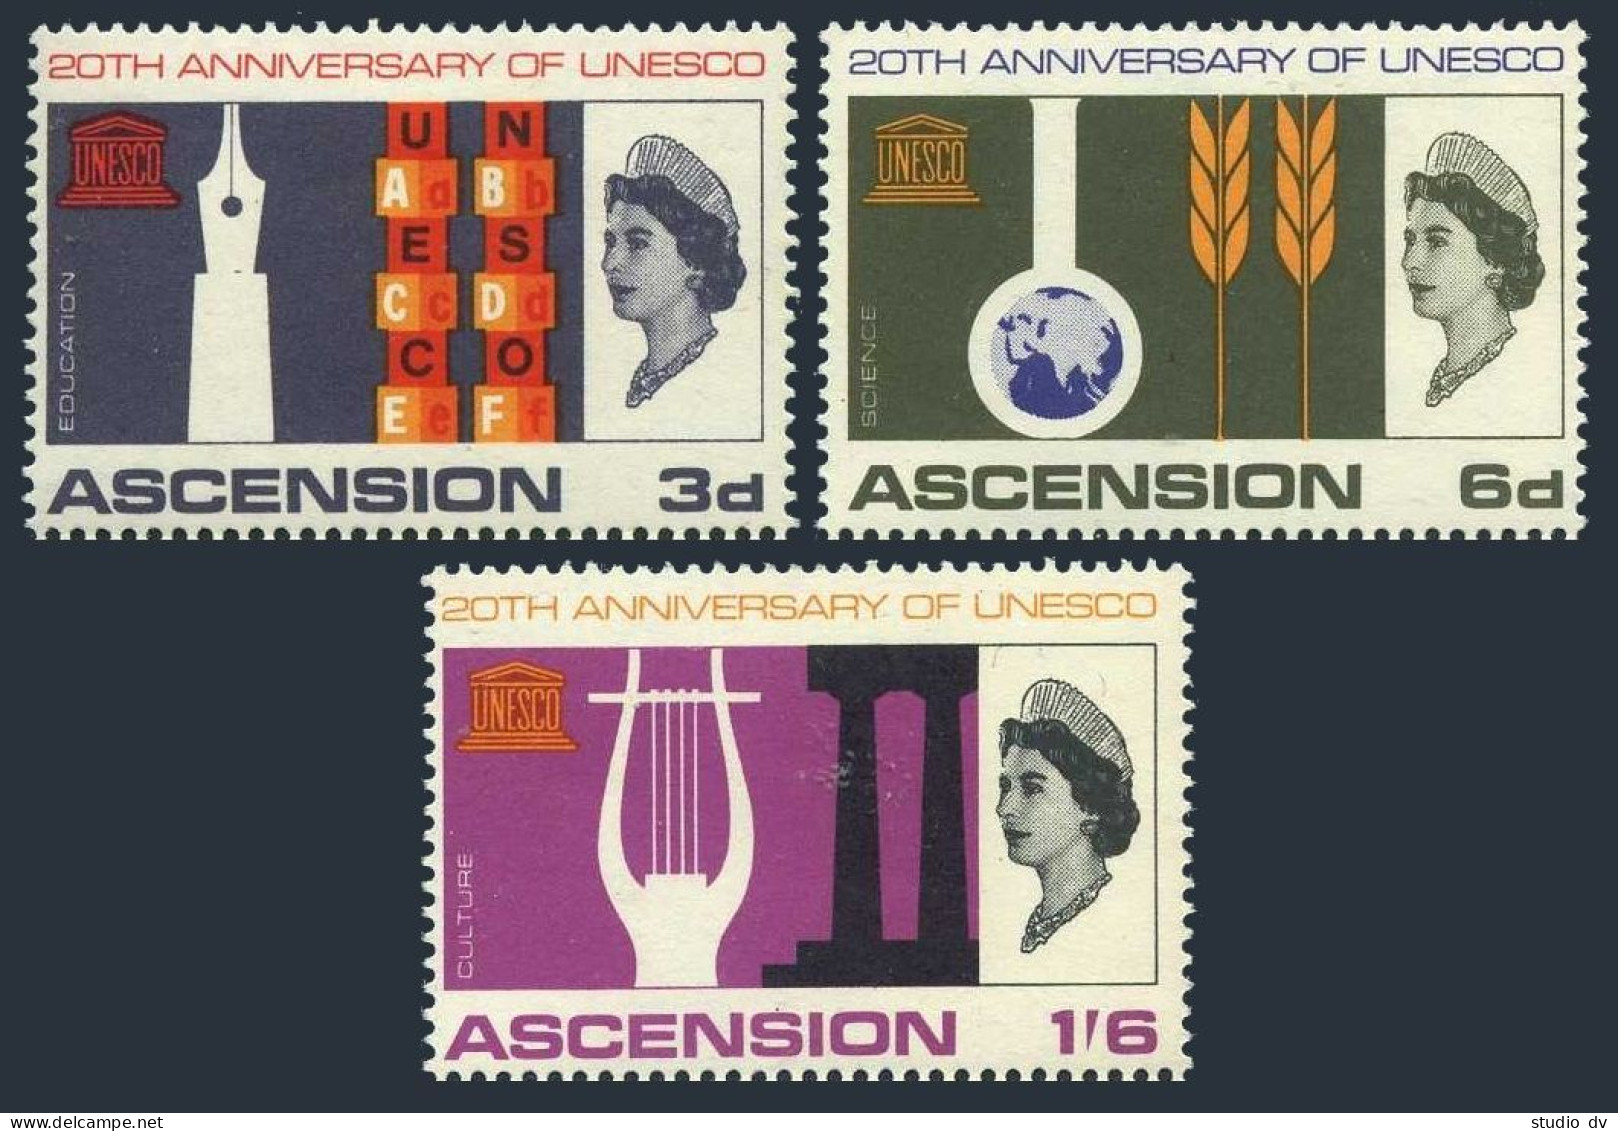 Ascension 108-110, MNH. Mi 112-114. UNESCO-20, 1967. Education, Science,Culture. - Ascension (Ile De L')